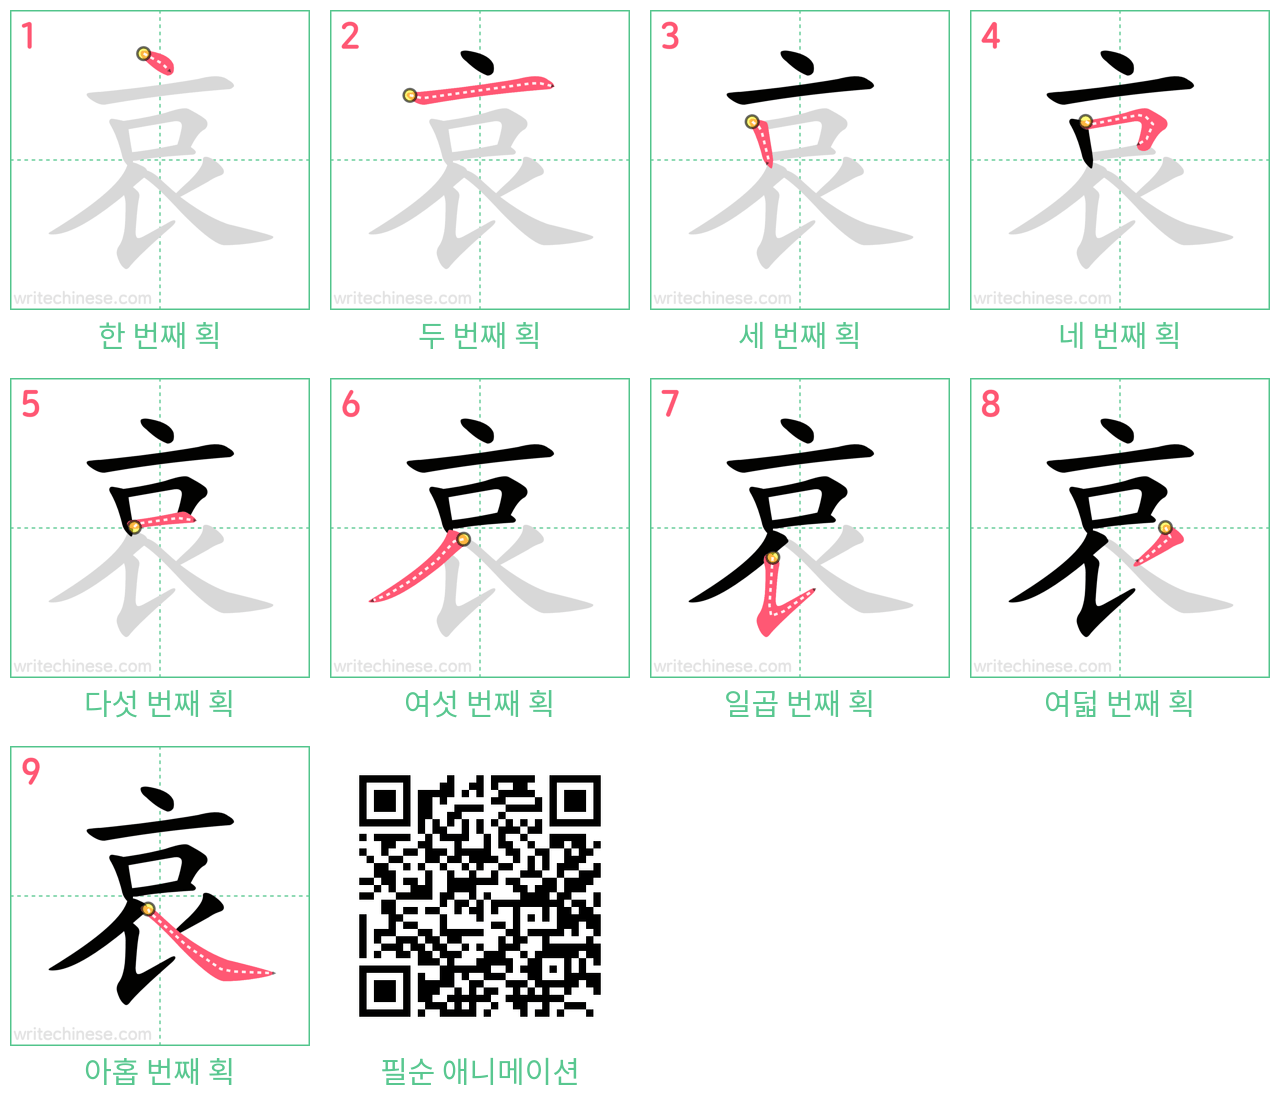 哀 step-by-step stroke order diagrams